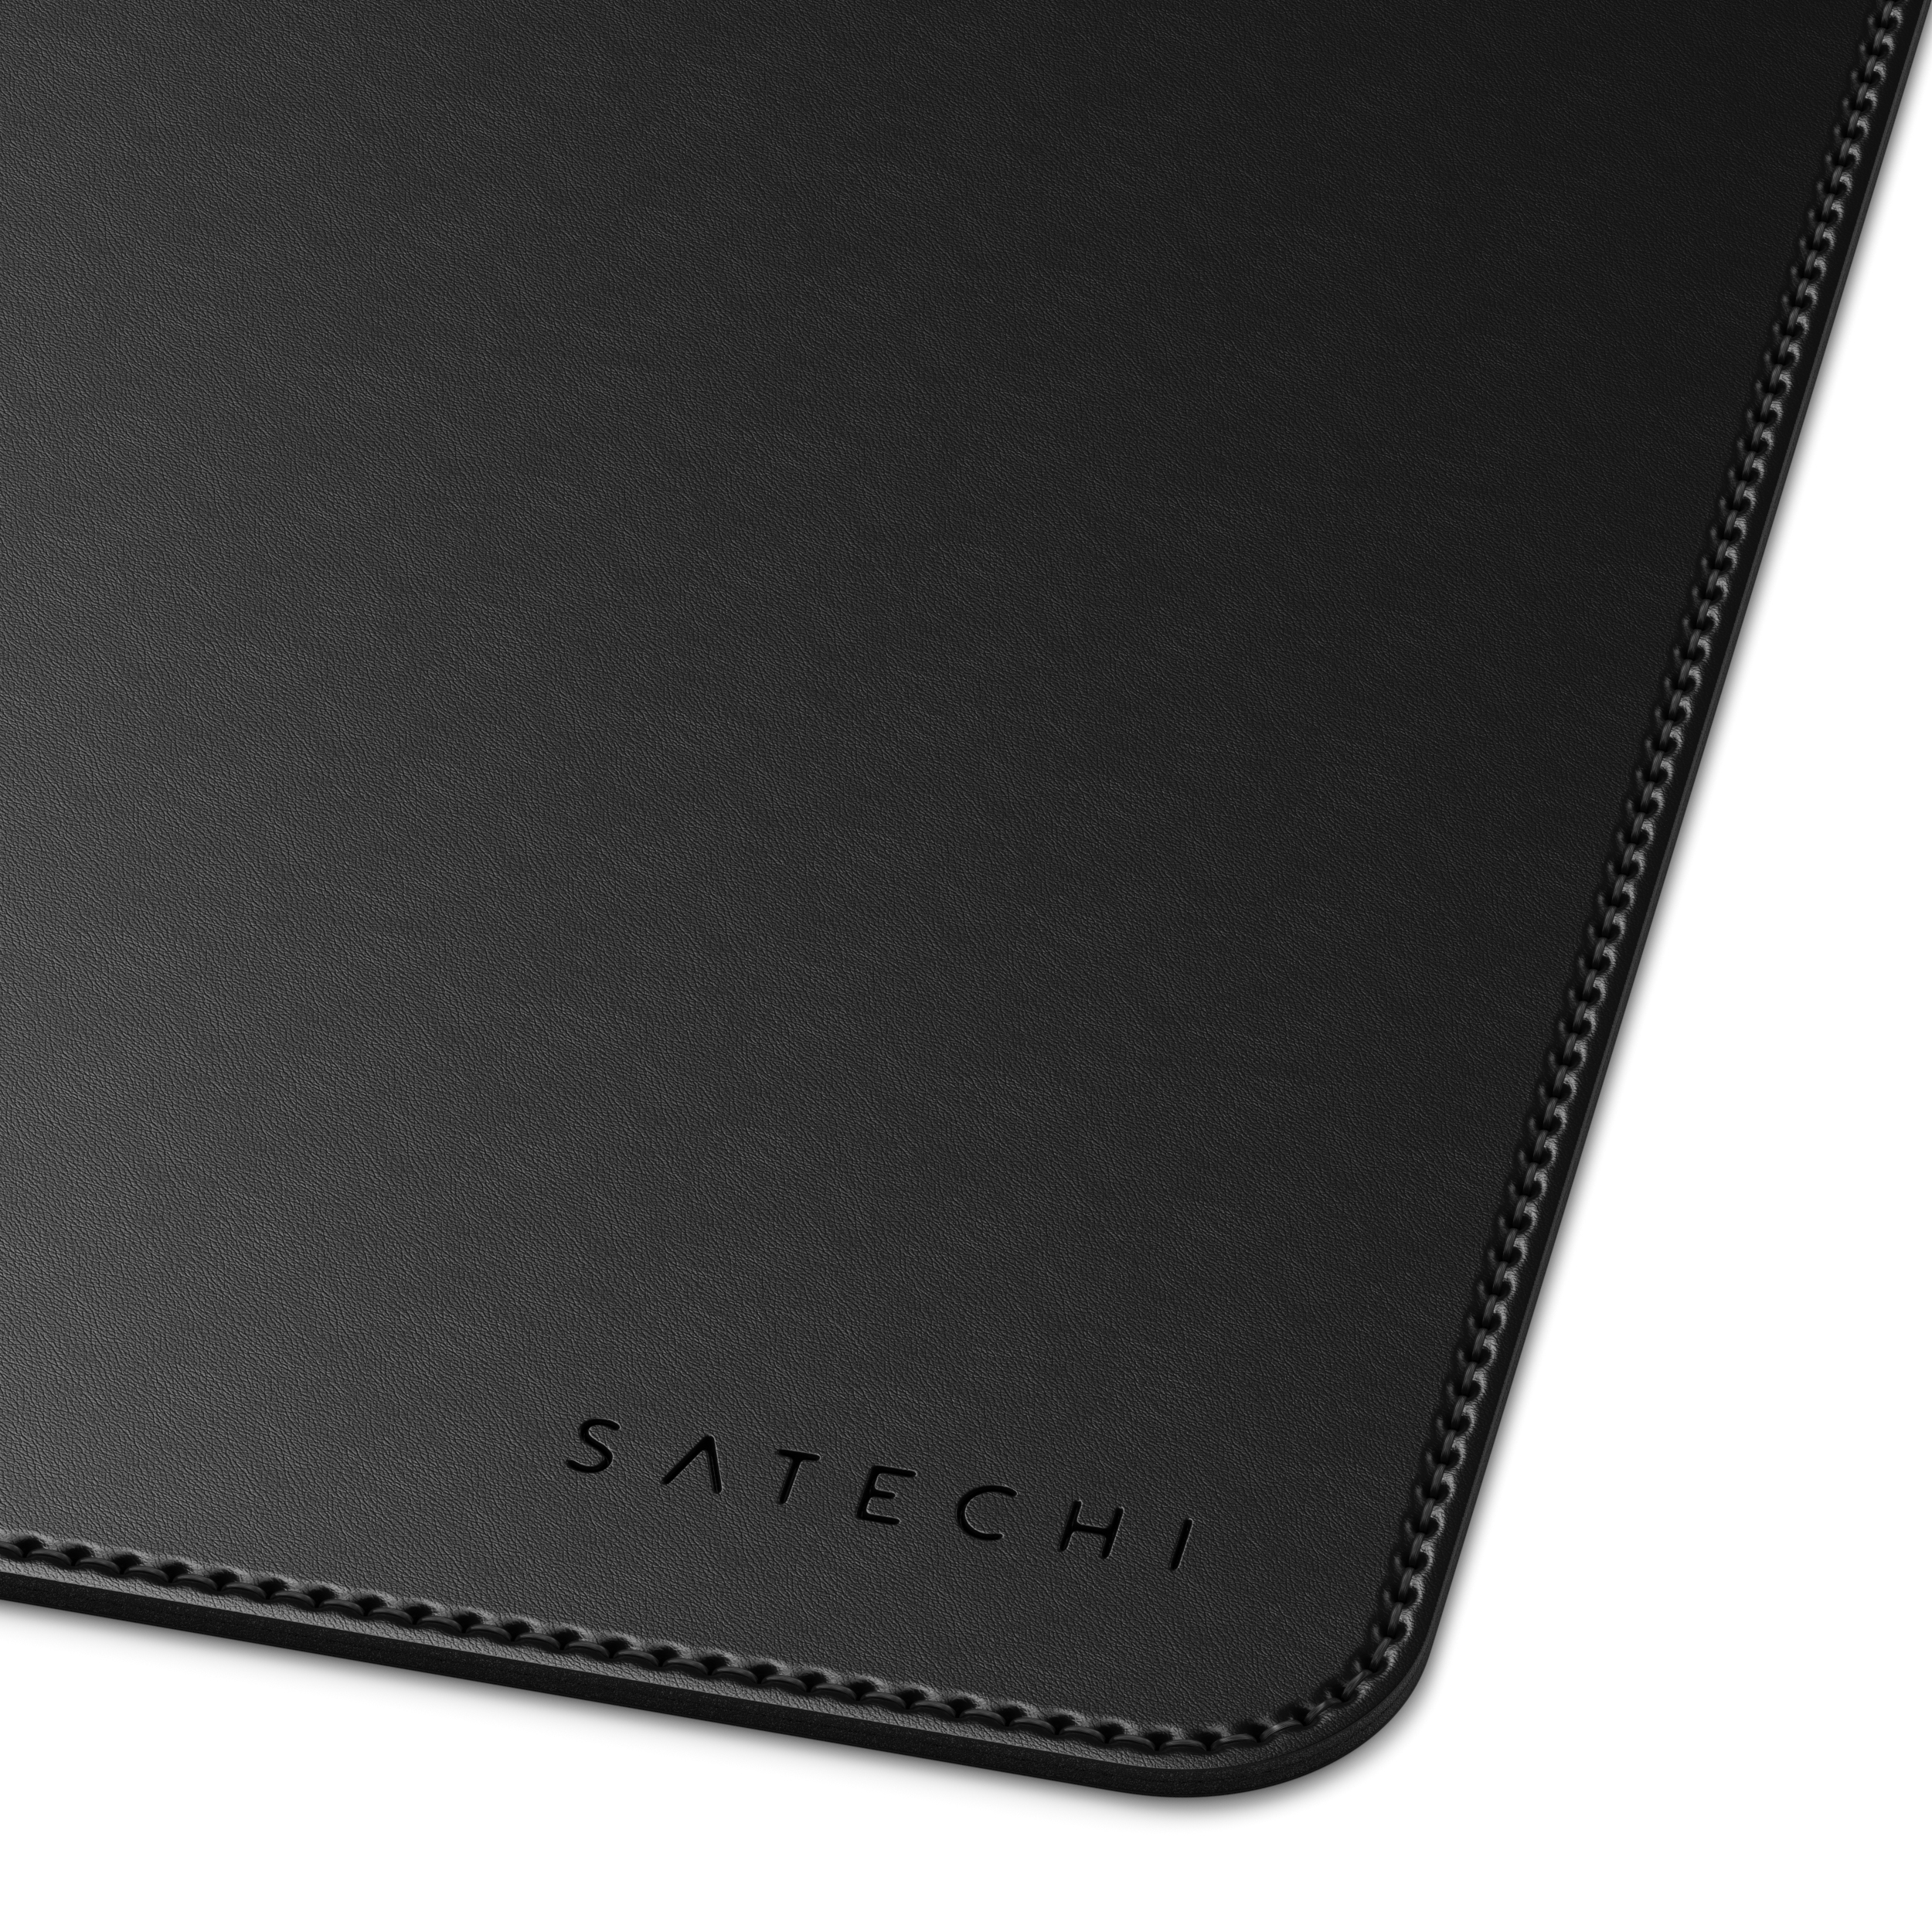 cm Deskmate Eco-Leather (31 58,42 Black - SATECHI cm) Mousepad x